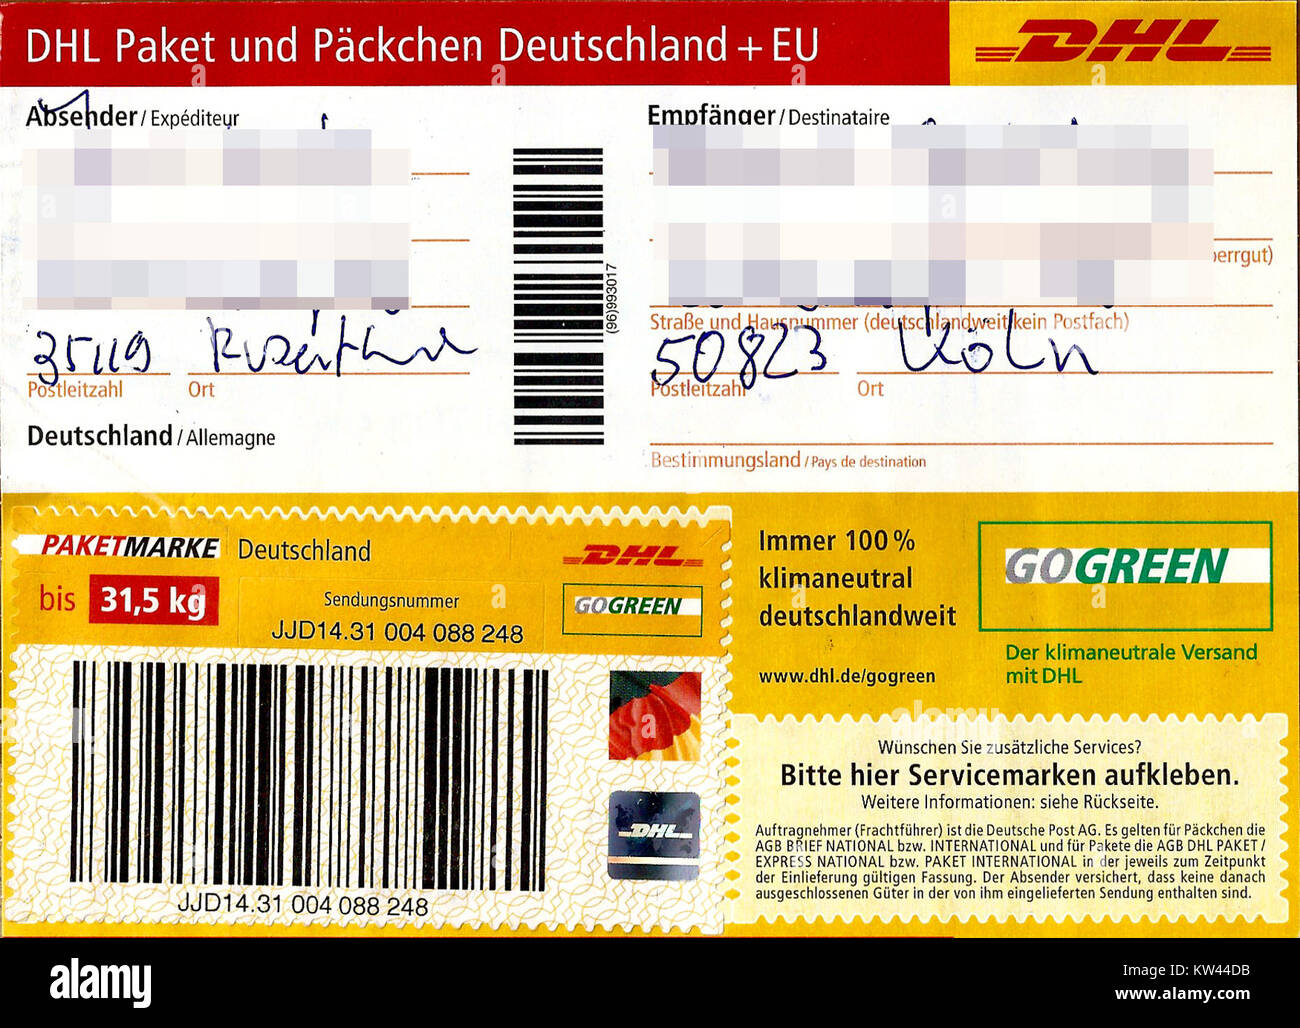 Paketaufkleber DHL Paket mit Paketmarke bis 31,5 kg 2016 Stockfotografie -  Alamy